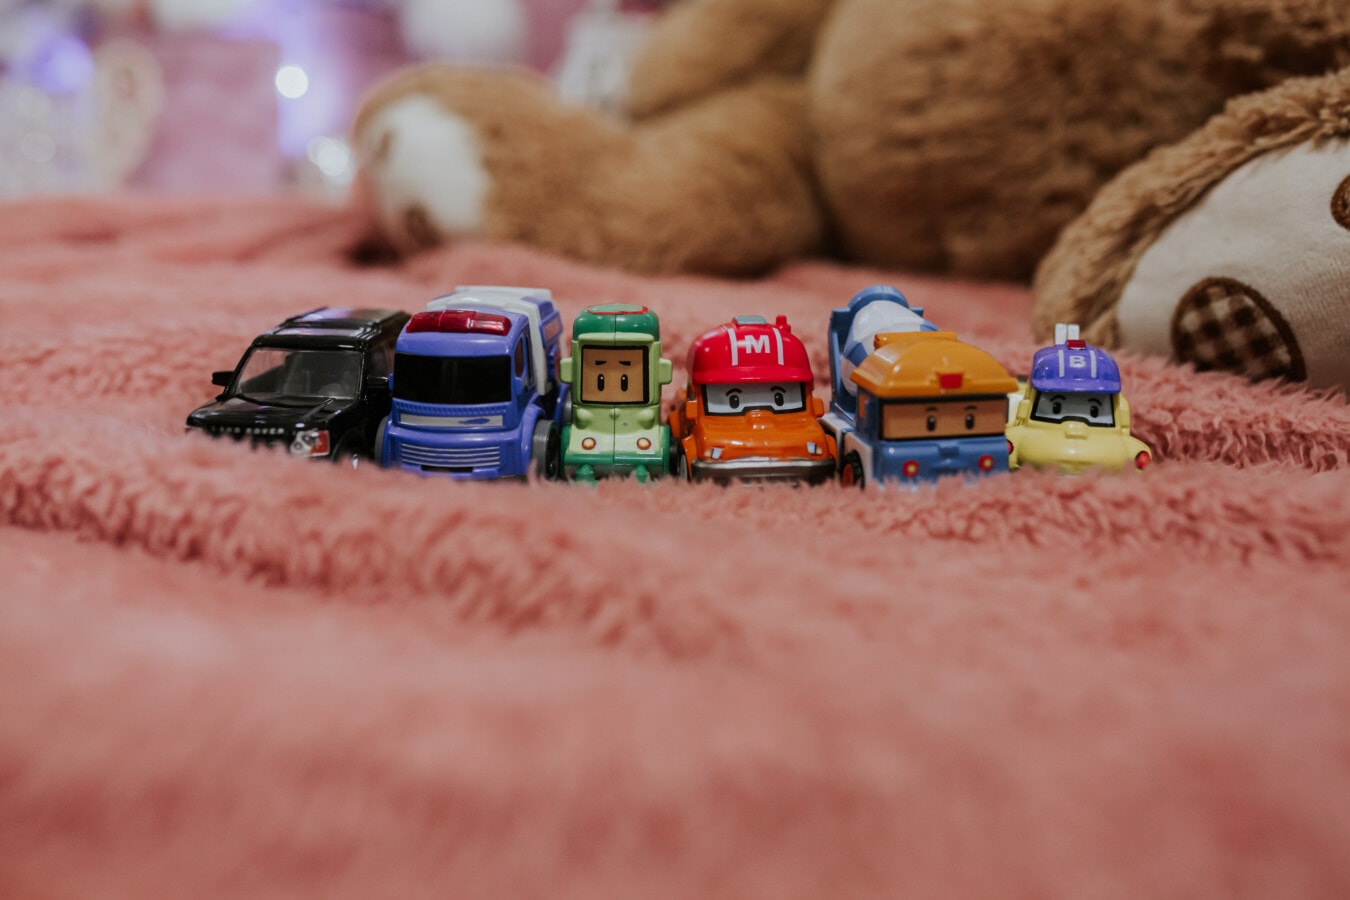 Spielzeug, Fahrzeuge, Miniatur, Teddybär Spielzeug, Sammlung, Decke, Schlafzimmer, Spielzeug, Jahrgang, Kindheit